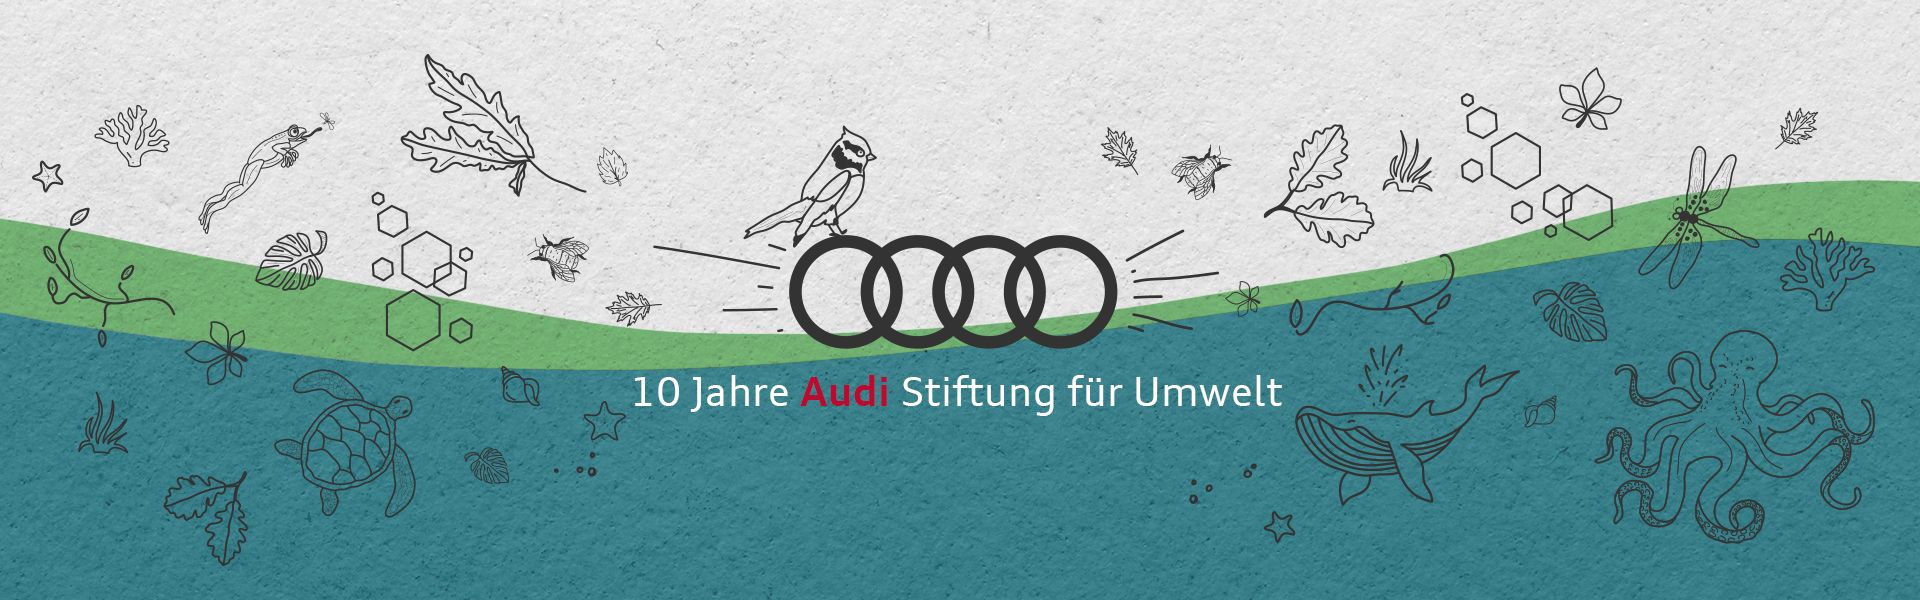 10 Jahre Audi Stiftung für Umwelt